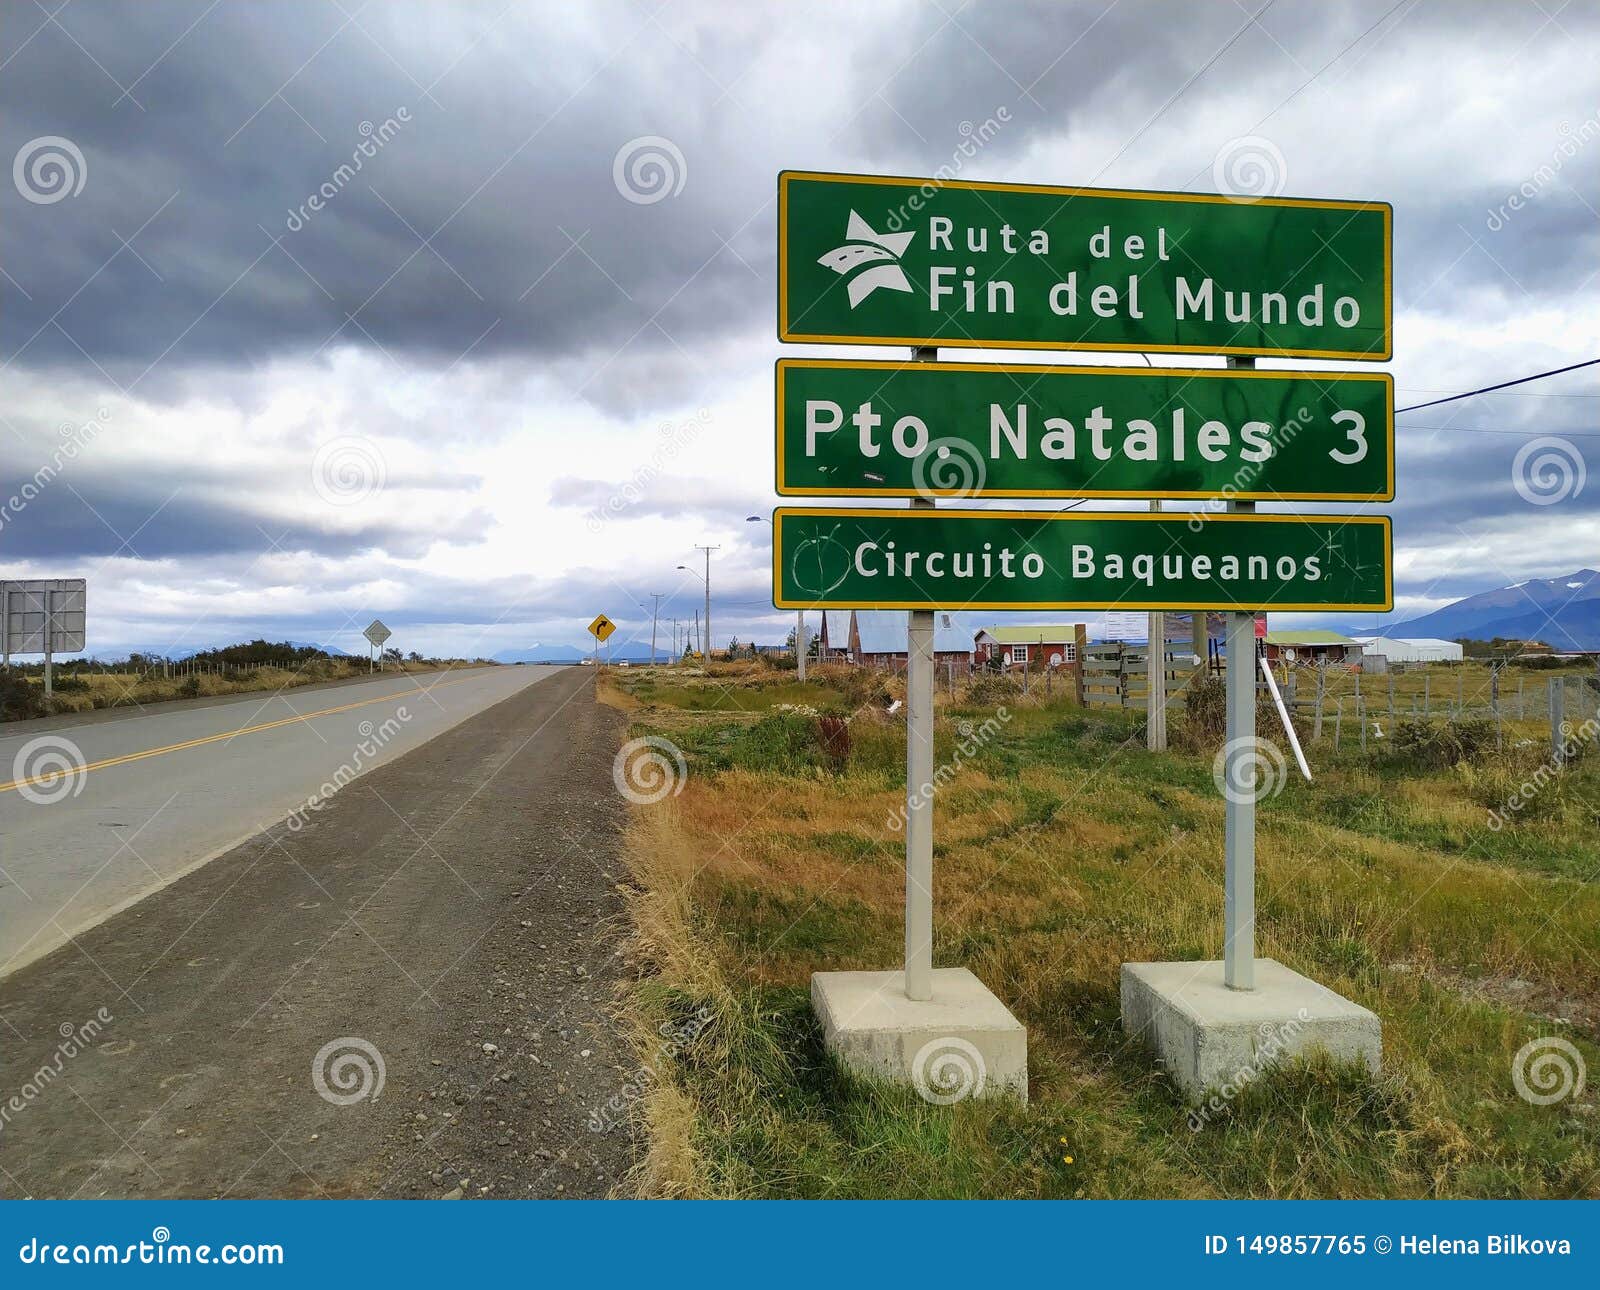 end of the world route - ruta del fin del mundo, patagonia chile